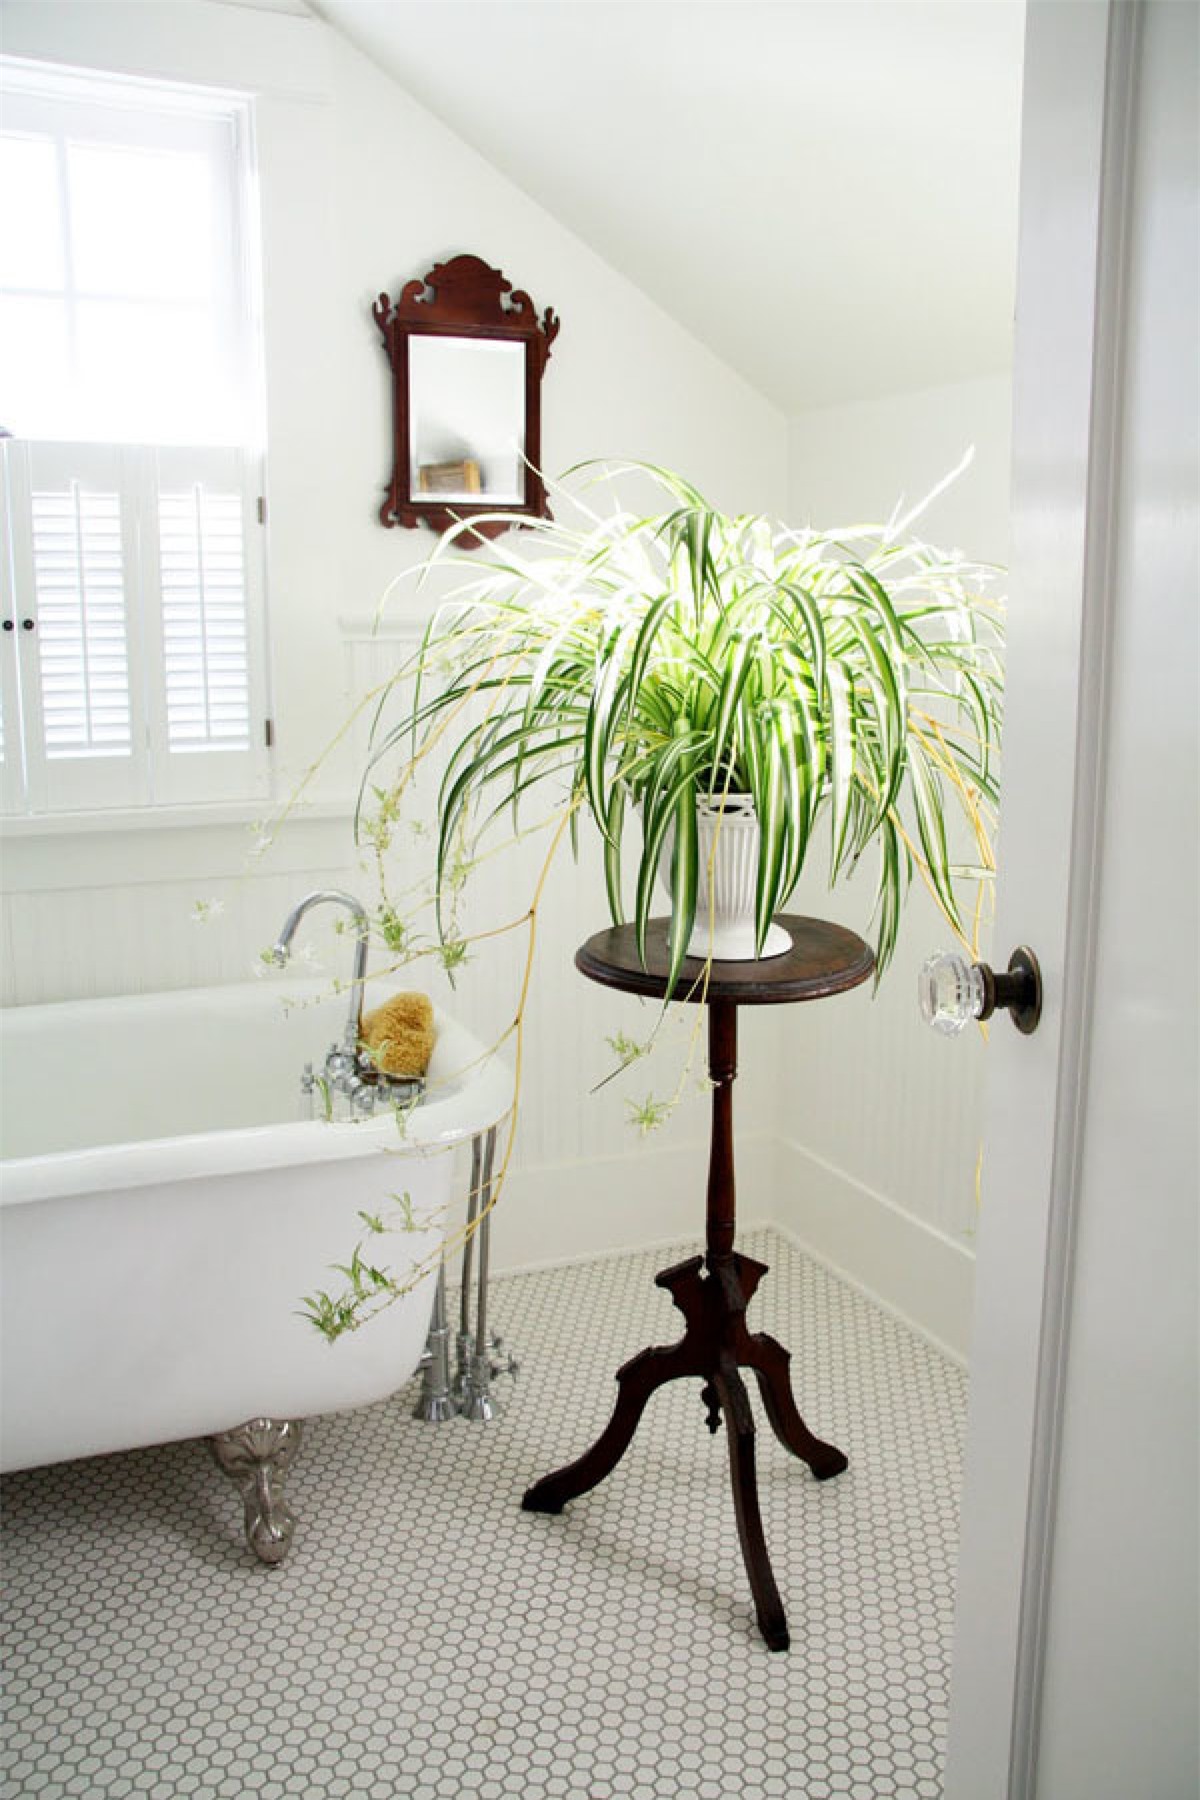 Mùi hôi trong WC sẽ biến mất nếu bạn trồng 1 trong 8 loại cây "khắc tinh" nhà vệ sinh này - Ảnh 2.